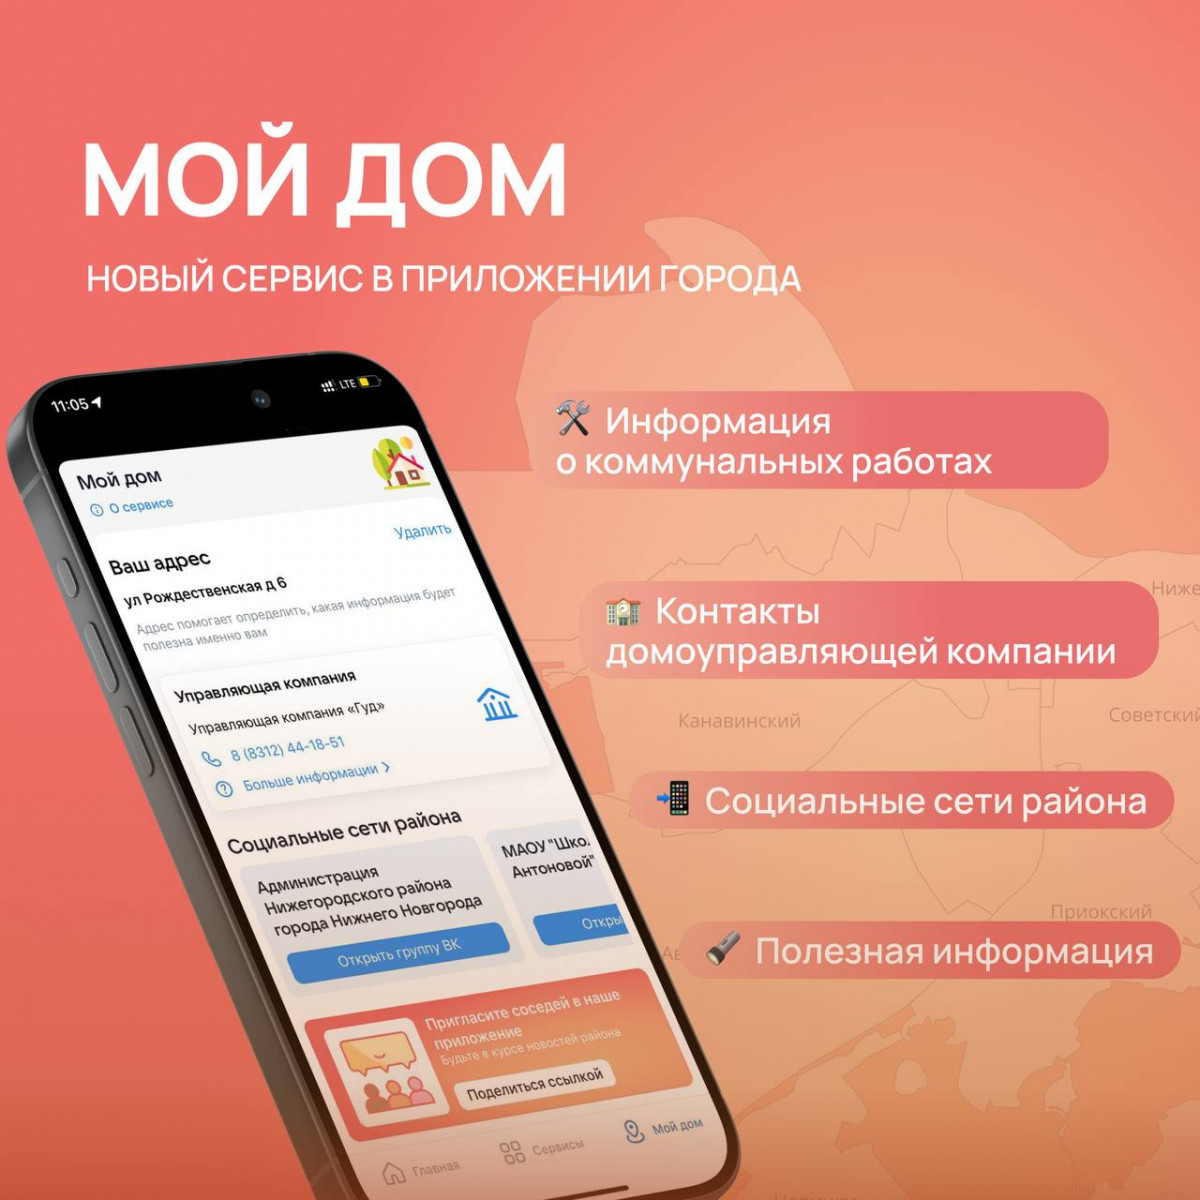 Новый сервис в приложении «Мой Нижний Новгород» поможет нижегородцам узнавать информацию об их доме